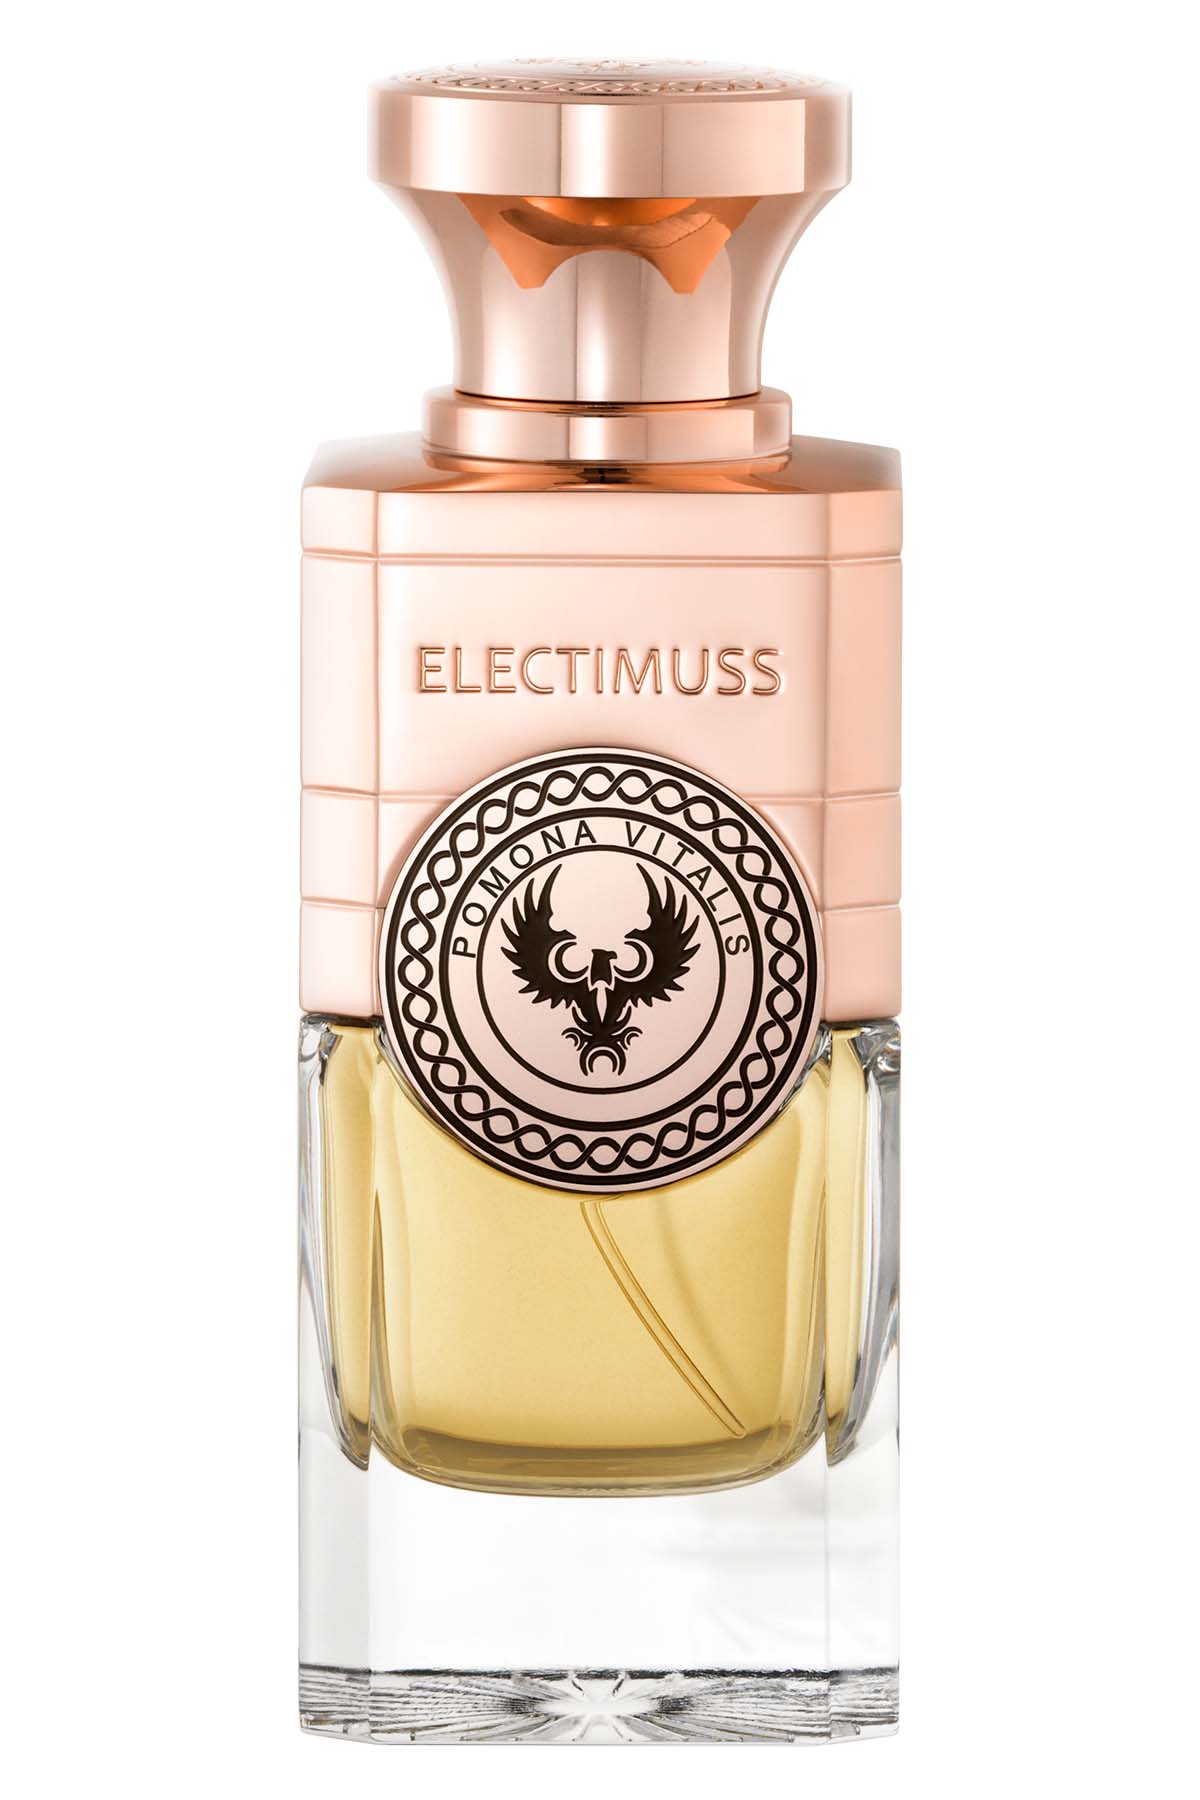 Electimuss Pomona Vitalis Extrait de Parfum